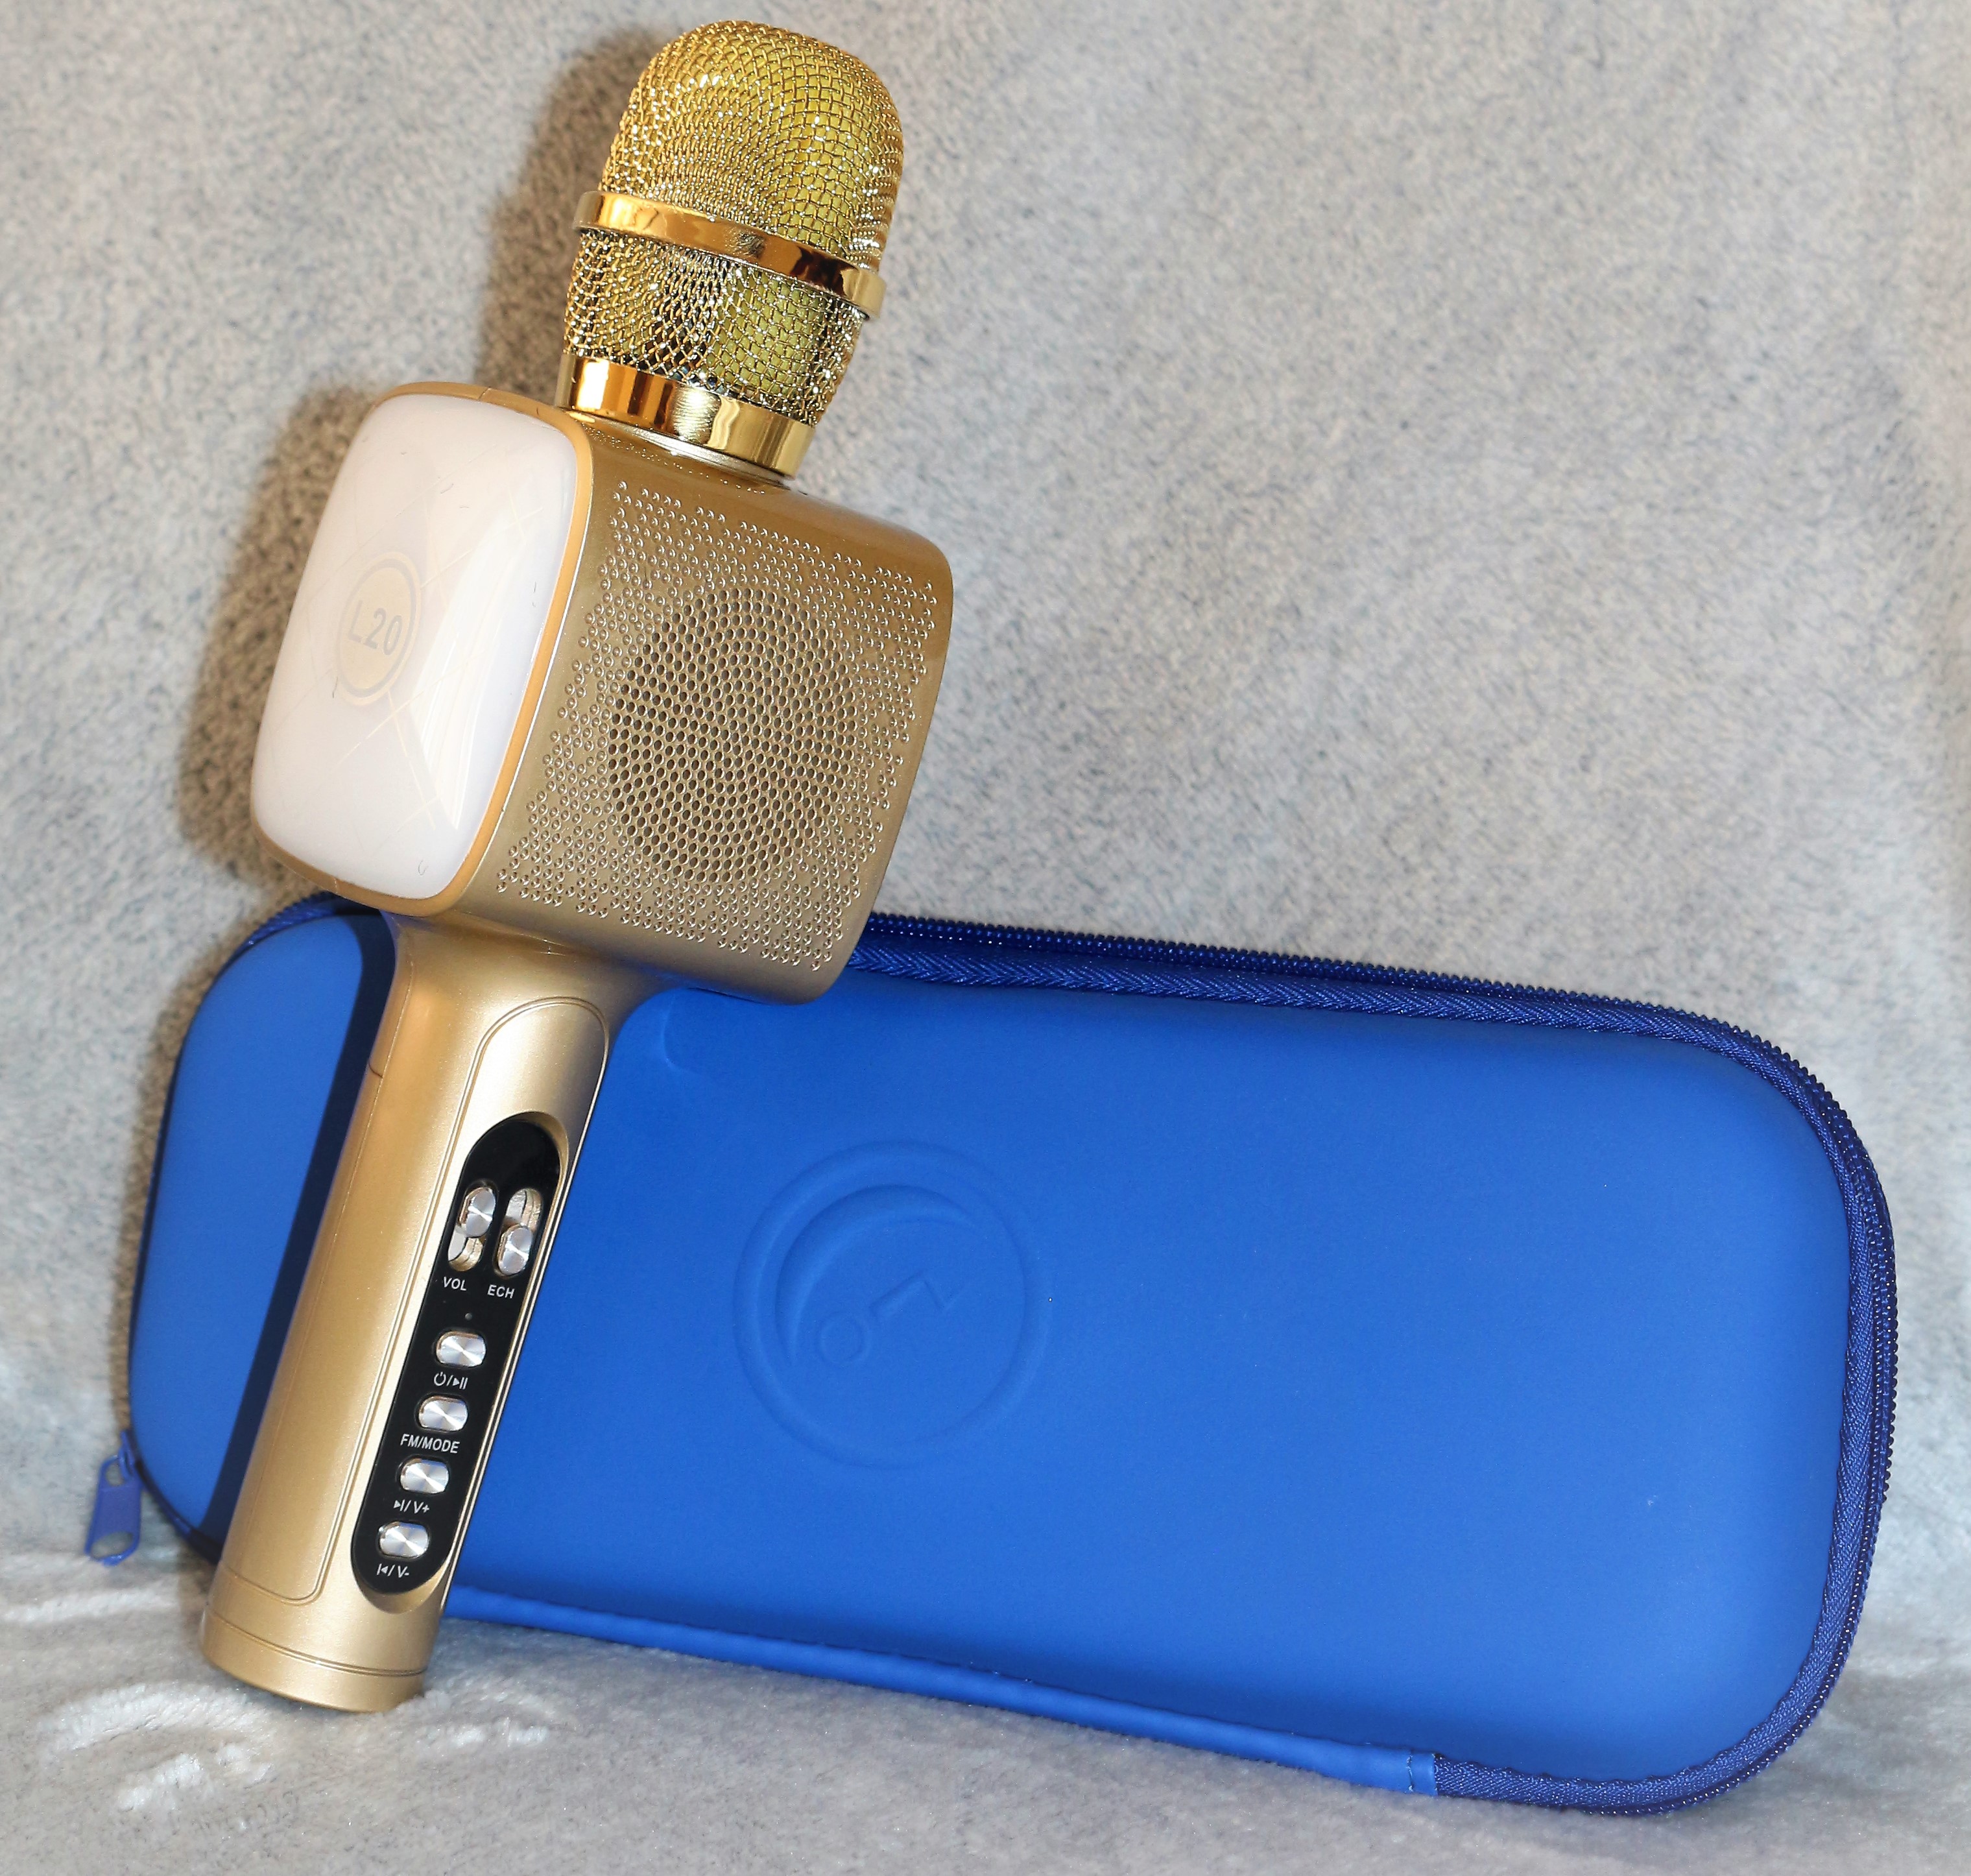 

Беспроводной Bluetooth микрофон для караоке в синем чехле DM High Quality L20 Original 4Вт+4Вт с изменением голоса и светомузыкой Gold со сменной батареей и инструкцией на русском